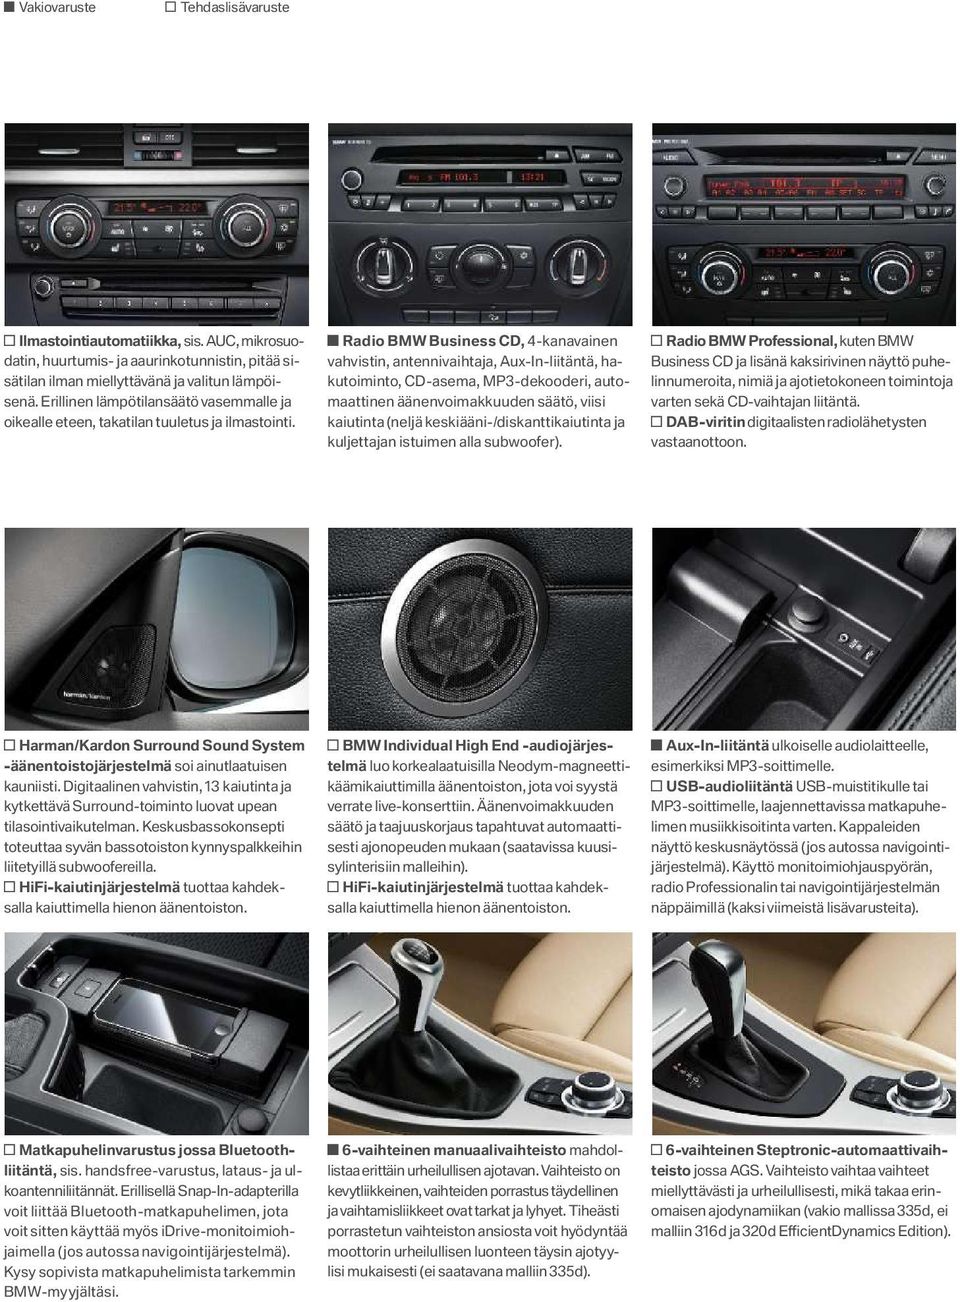 Radio BMW Business CD, 4 -kanavainen vahvistin, antennivaihtaja, Aux-In-liitäntä, hakutoiminto, CD-asema, MP3 -dekooderi, automaattinen äänenvoimakkuuden säätö, viisi kaiutinta (neljä